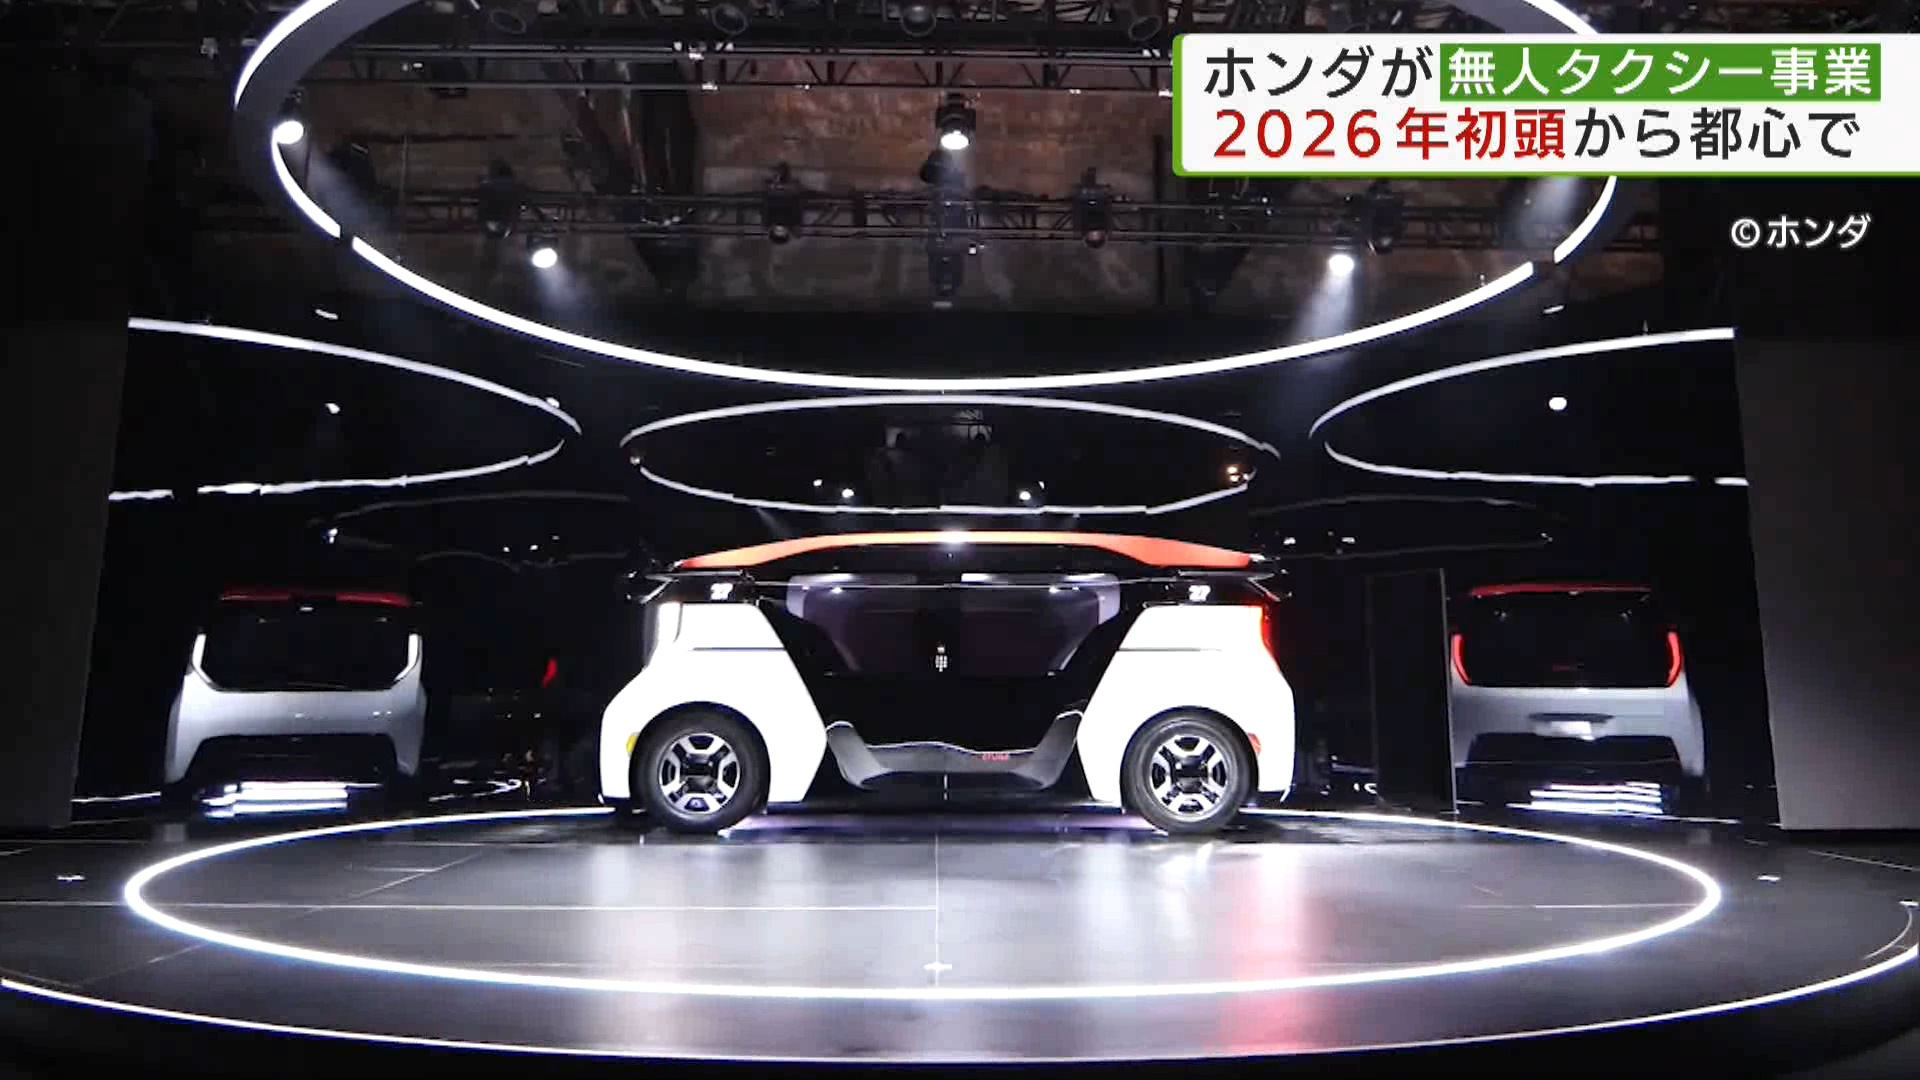 ホンダは、自動運転車両を使った無人タクシーの事業を、2026年の初頭に東京都心で始める予定と発表しました。